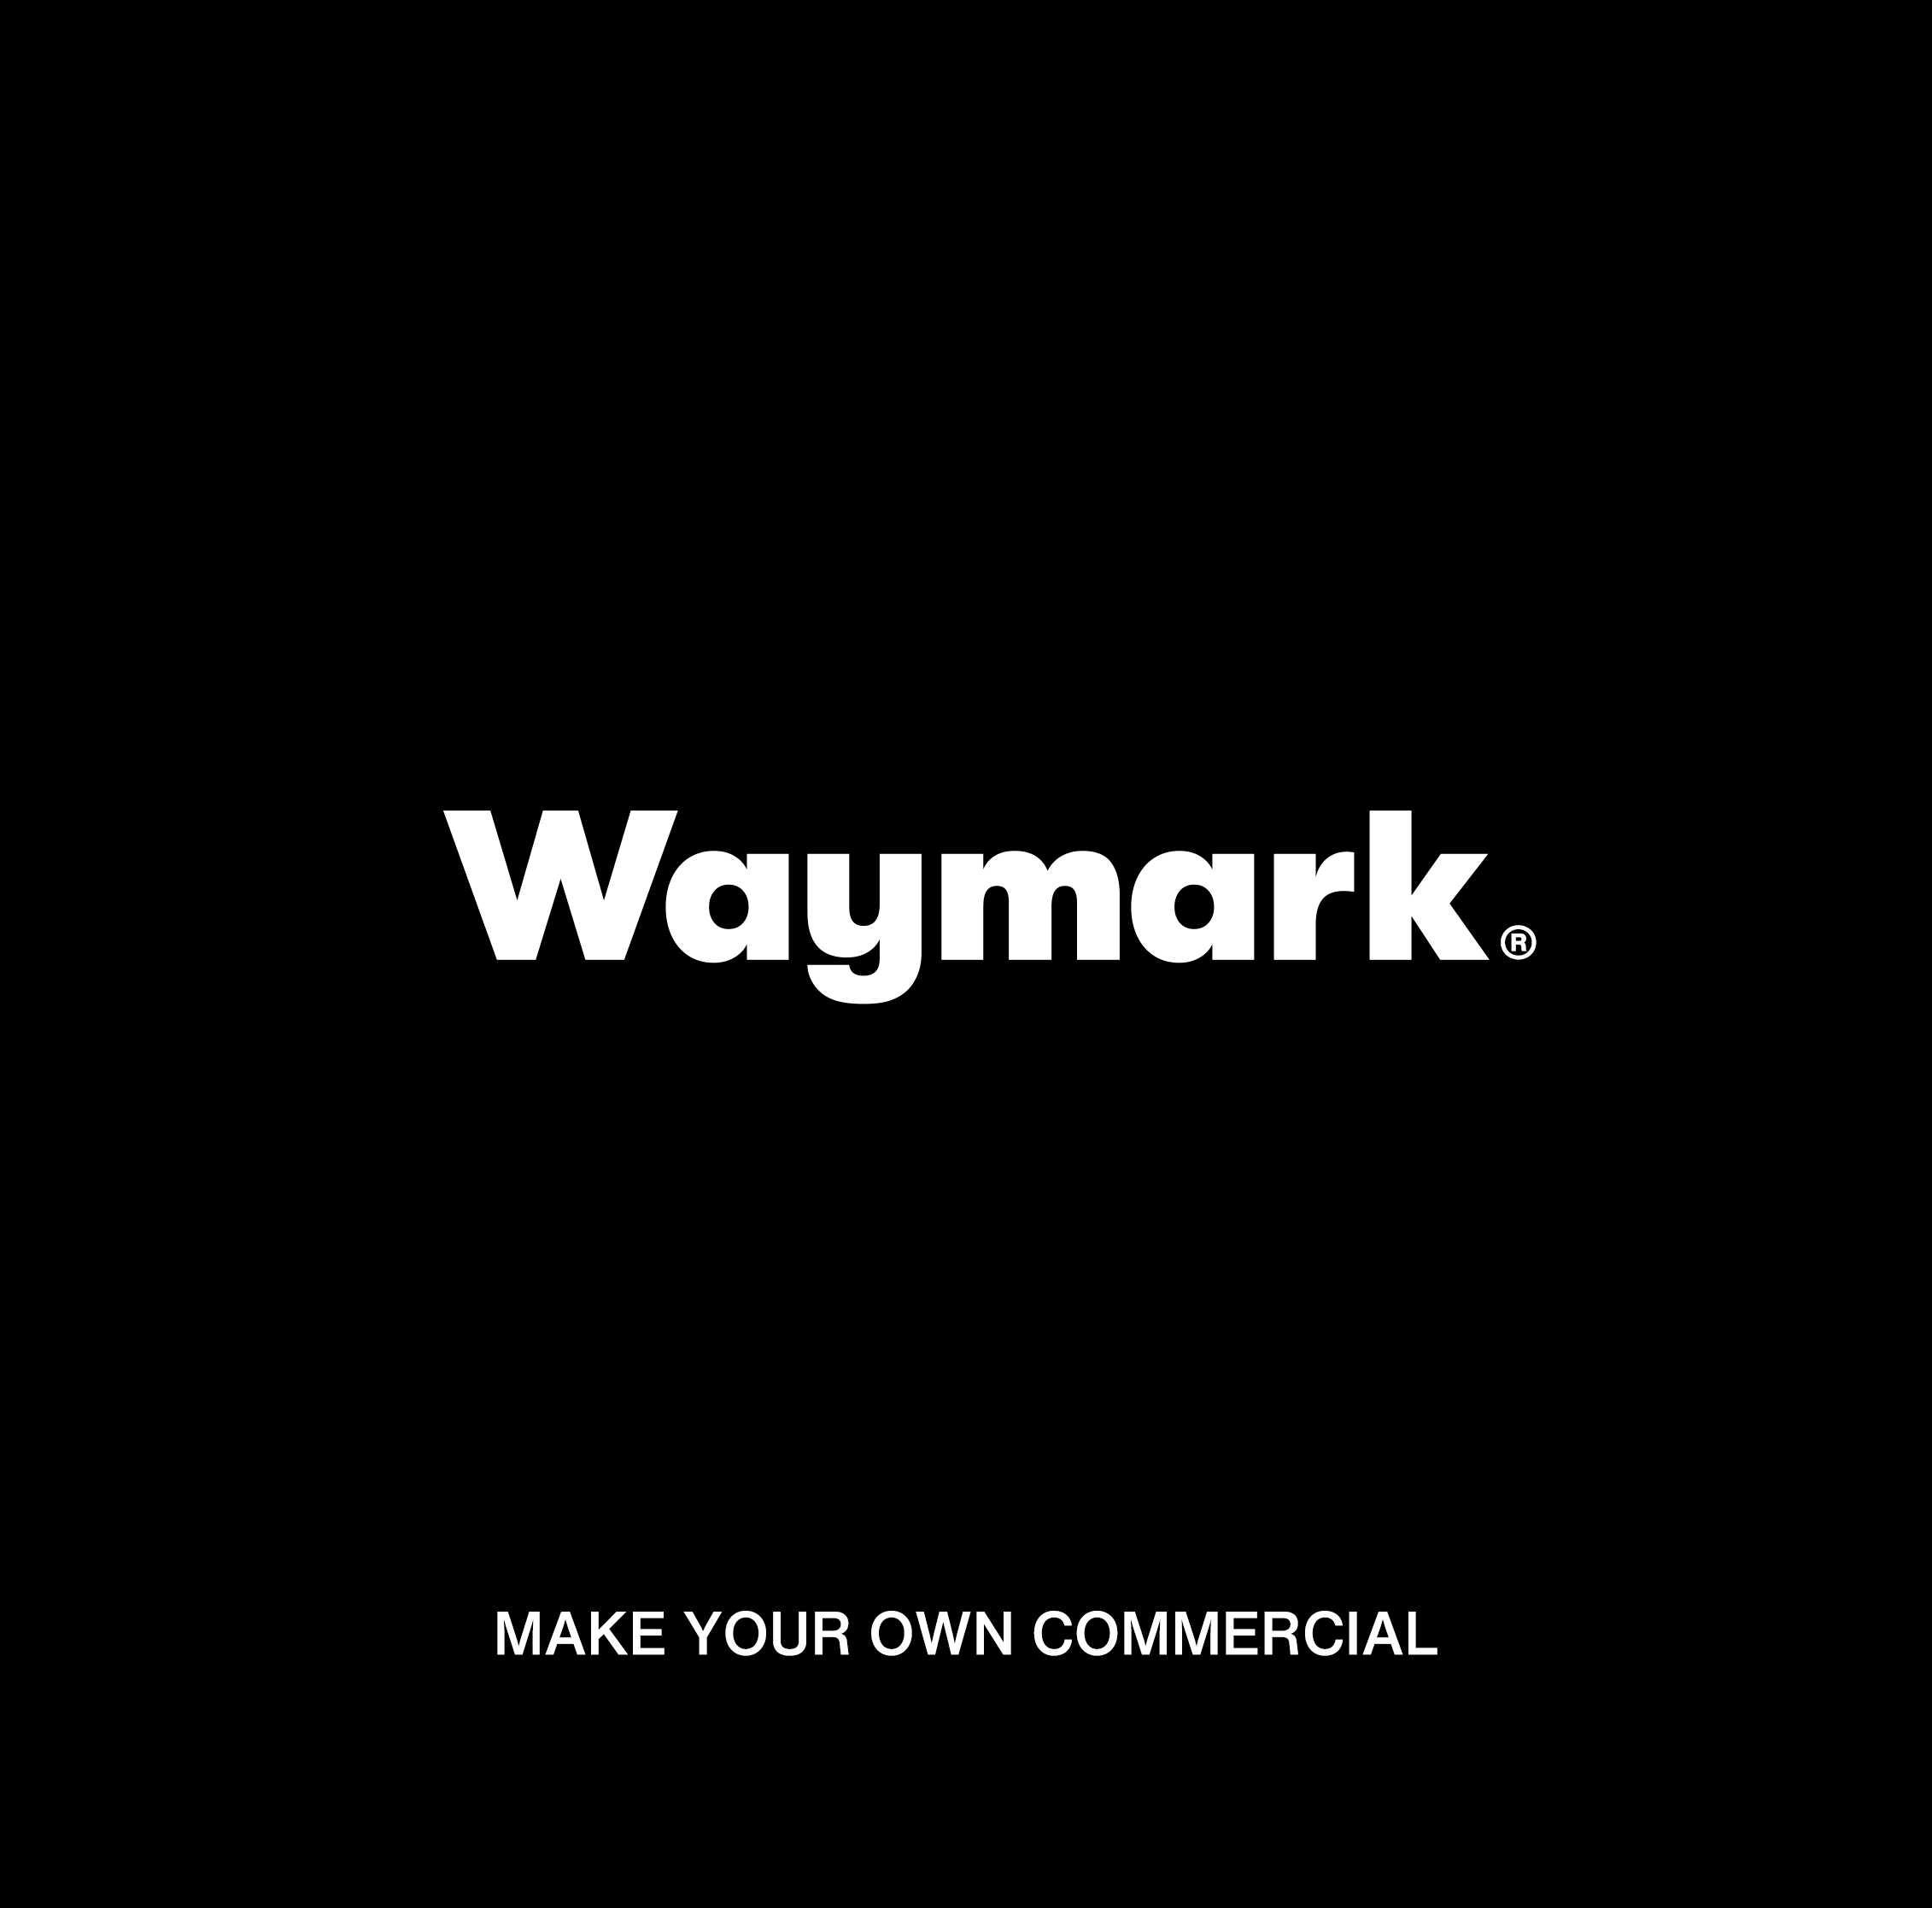 Waymark Video Ads | Online Video Maker